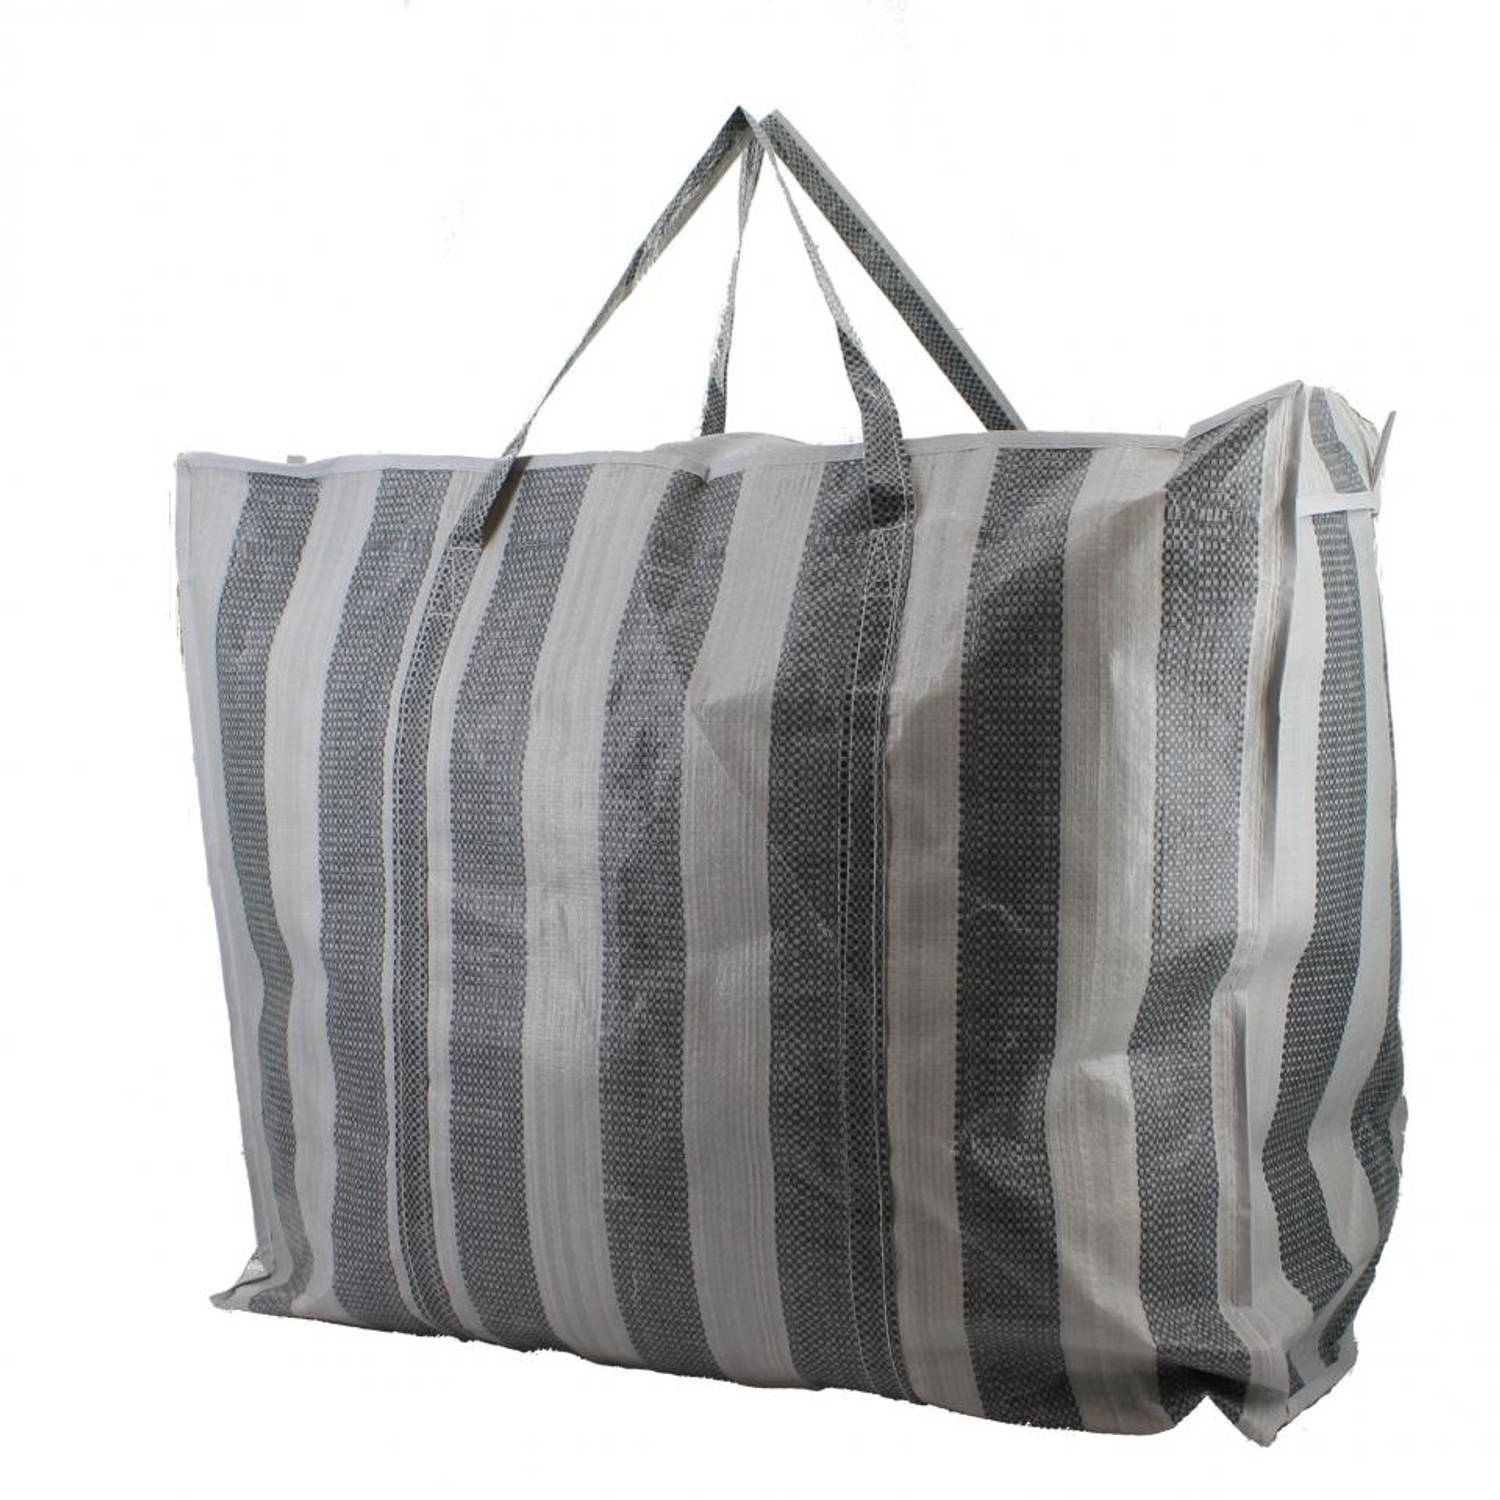 Mier bolvormig hartstochtelijk Runaway shoppingbag - zwart/wit | Blokker